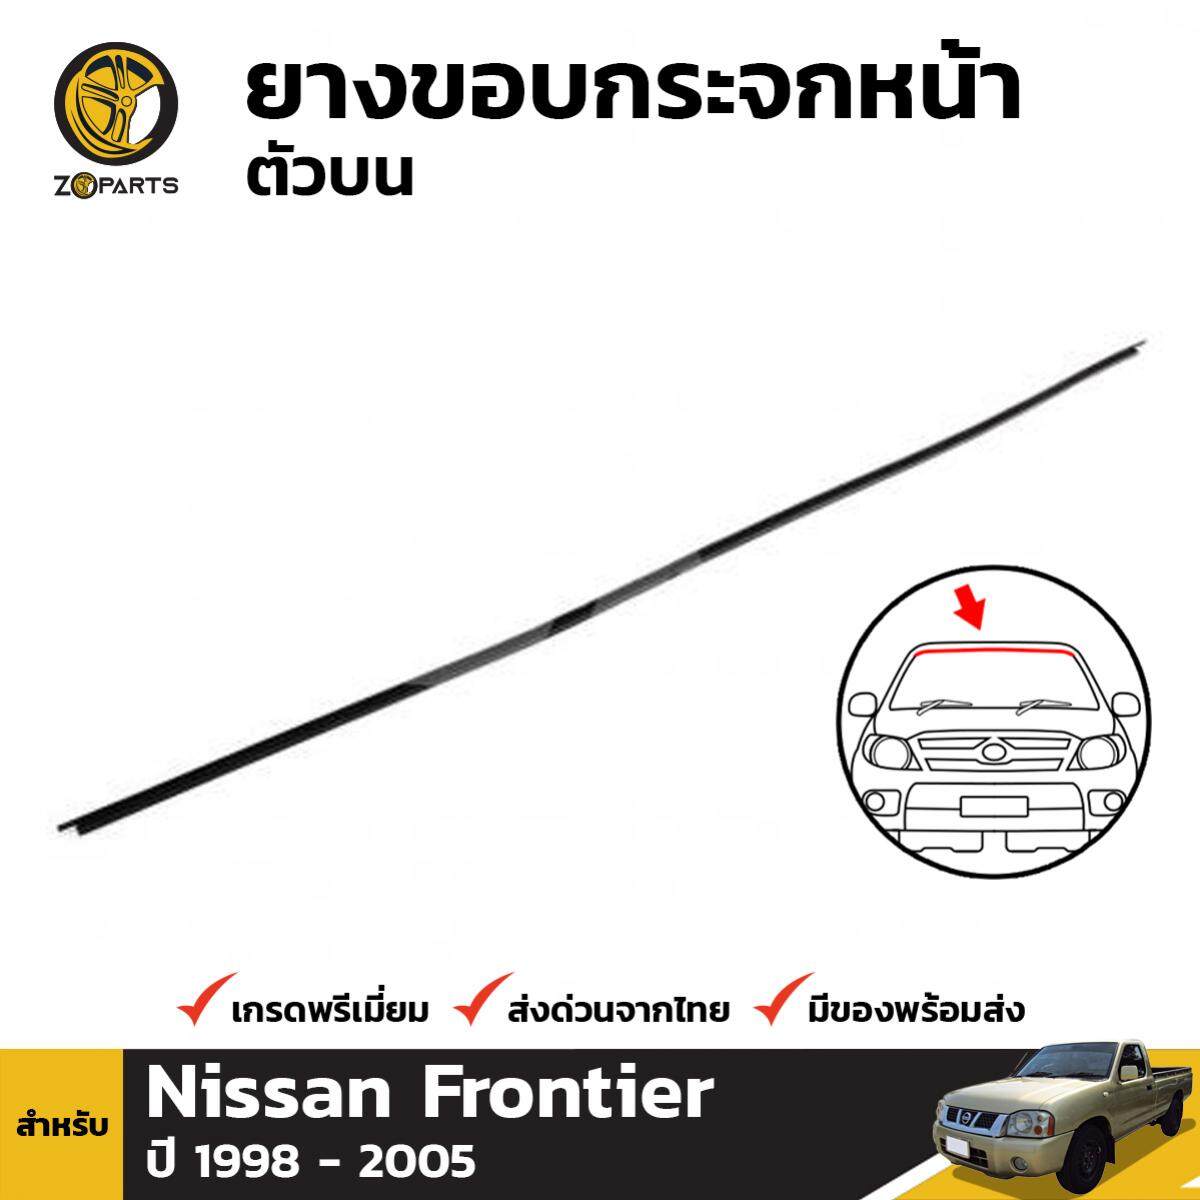 ยางกระจกหน้า ตัวบน สำหรับ Nissan Frontier D22 ปี 1998 - 2005 นิสสัน ฟรอนเทียร์ ยางขอบกระจกหน้า ยางขอบ ยางกระจกรถ คิ้วกระจกหน้า ยางซีลกระจกหน้า ยางกระจกหน้ารถ ยางกระจก รถยนต์ ยางขอบกระจก ยางธรรมชาติแท้ ผลิตจากไทย ราคาถูก